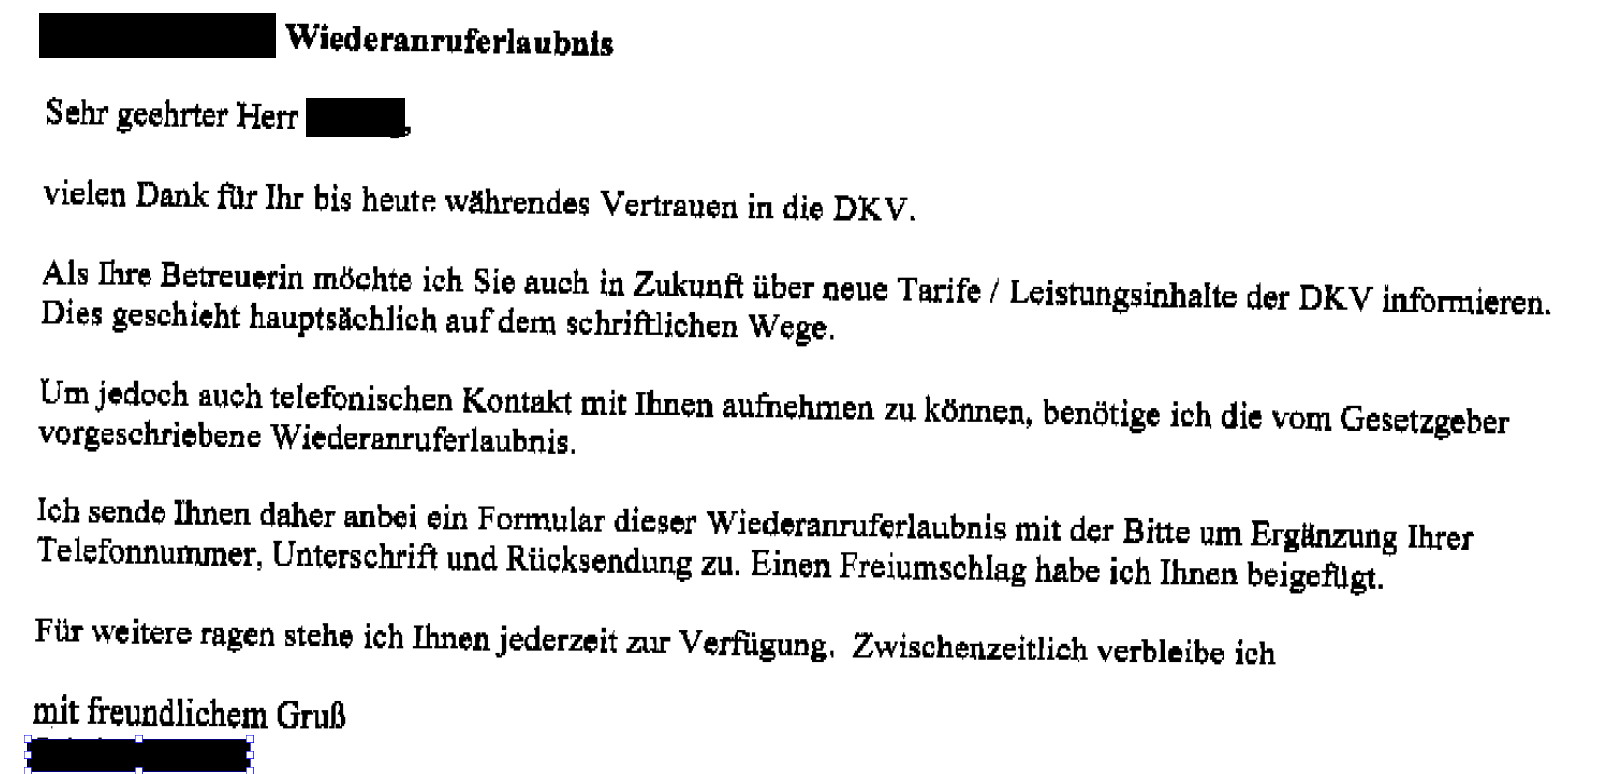 DKV-Grimm Rückwerbungsversuche - Frechheit oder "nur" fehlende Transparenz?